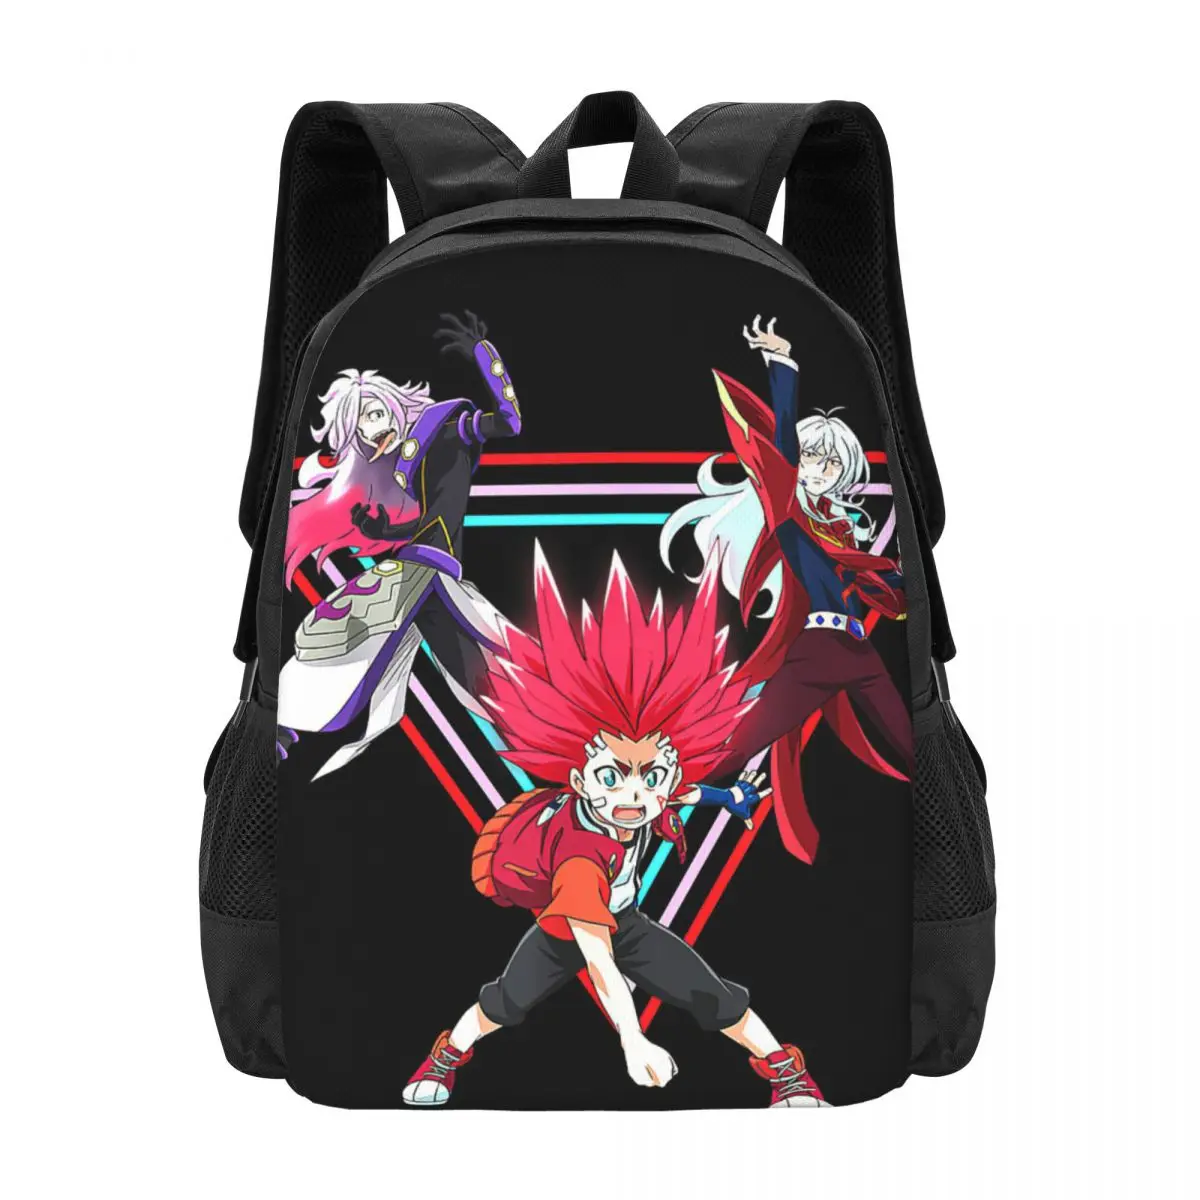 Beyblade Burst Backpack for Girls Boys Travel RucksackBackpacks for Teenage school bag